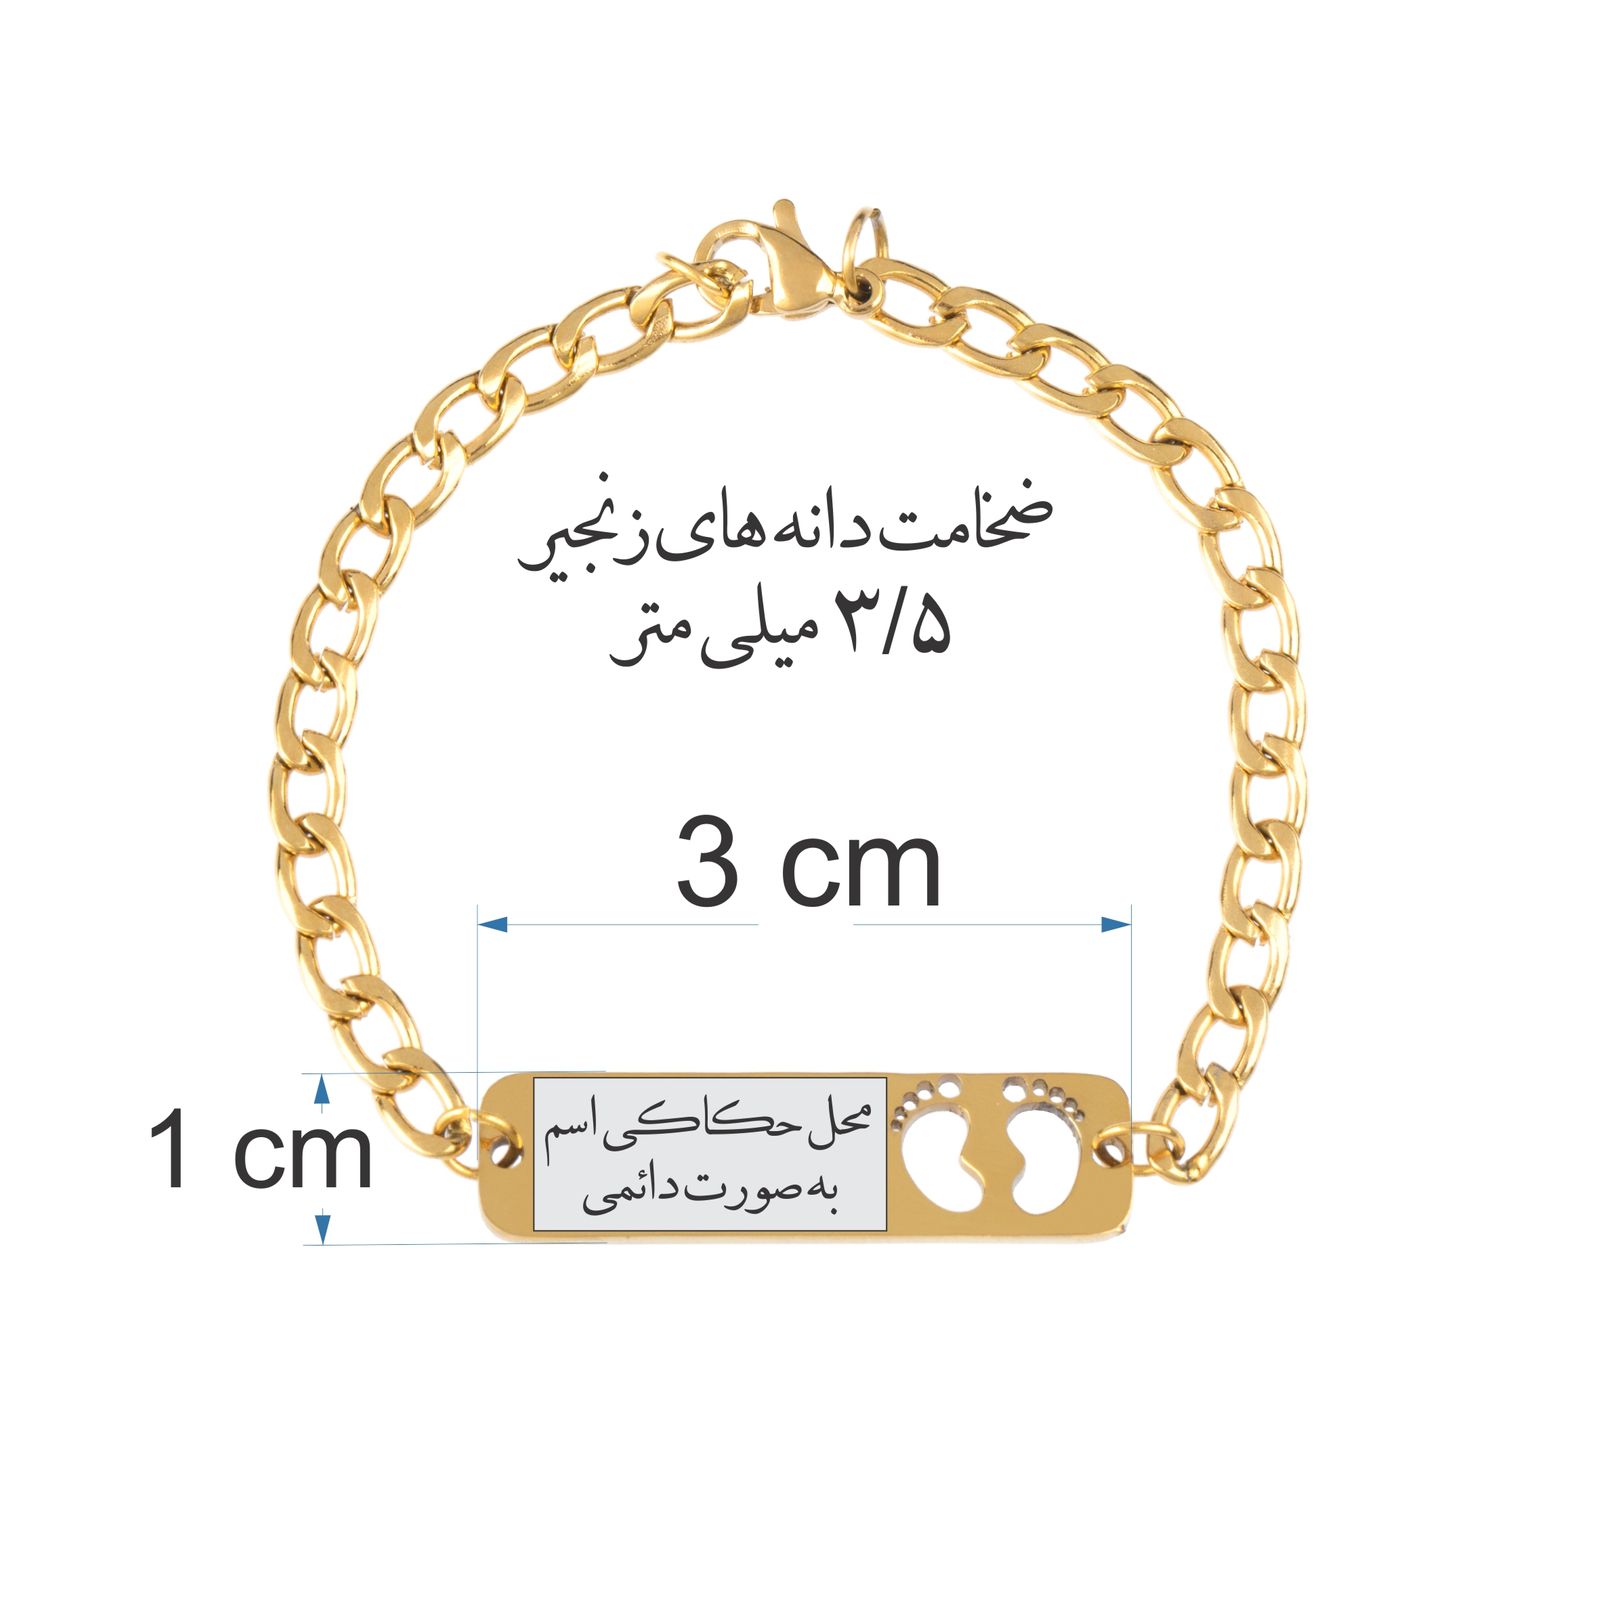 دستبند دخترانه گيلواره زراوشان مدل اسم نادیا کد B217 -  - 3